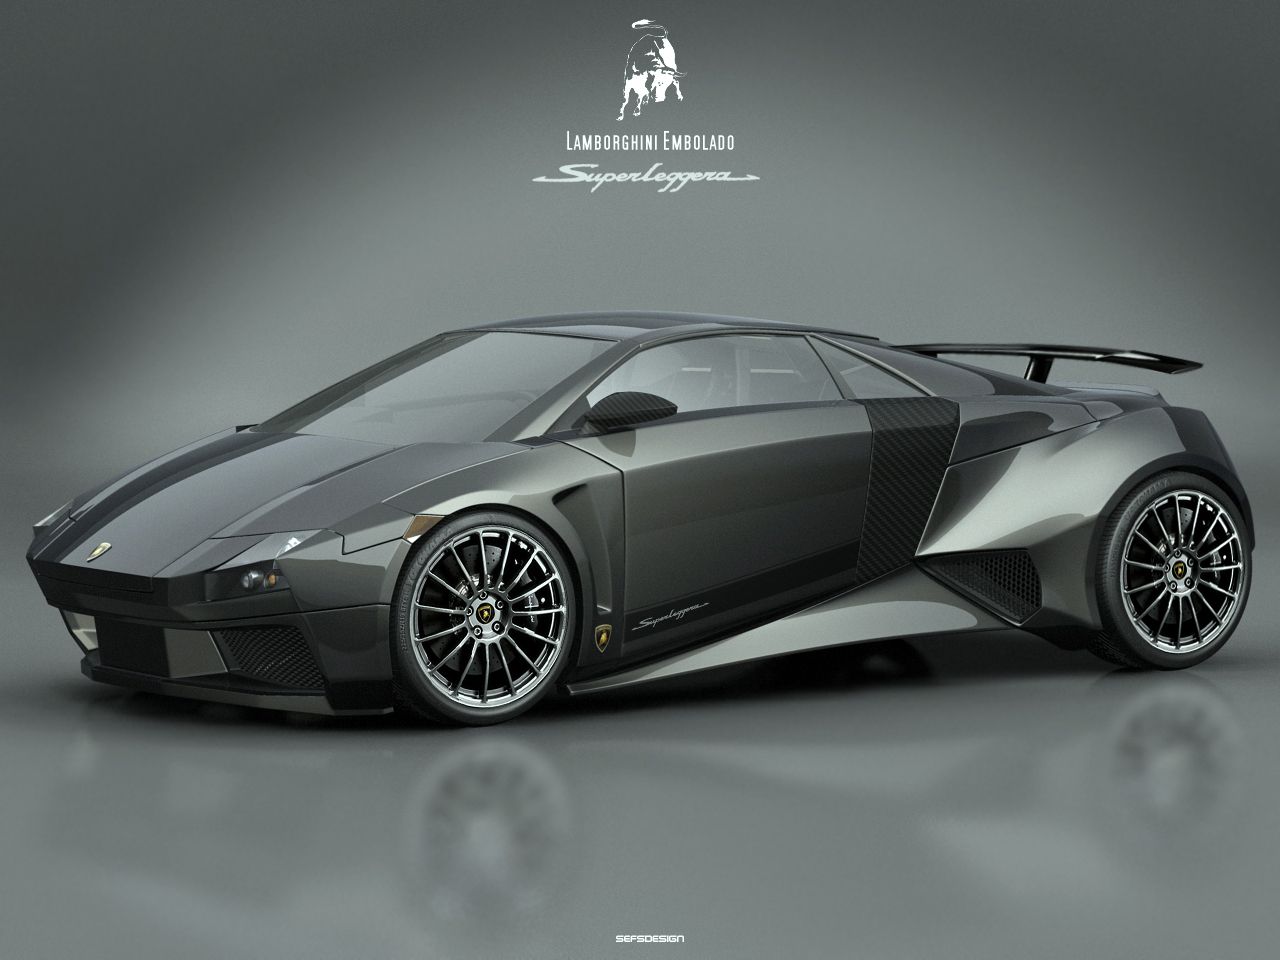 2007 Lamborghini Embolado Concept